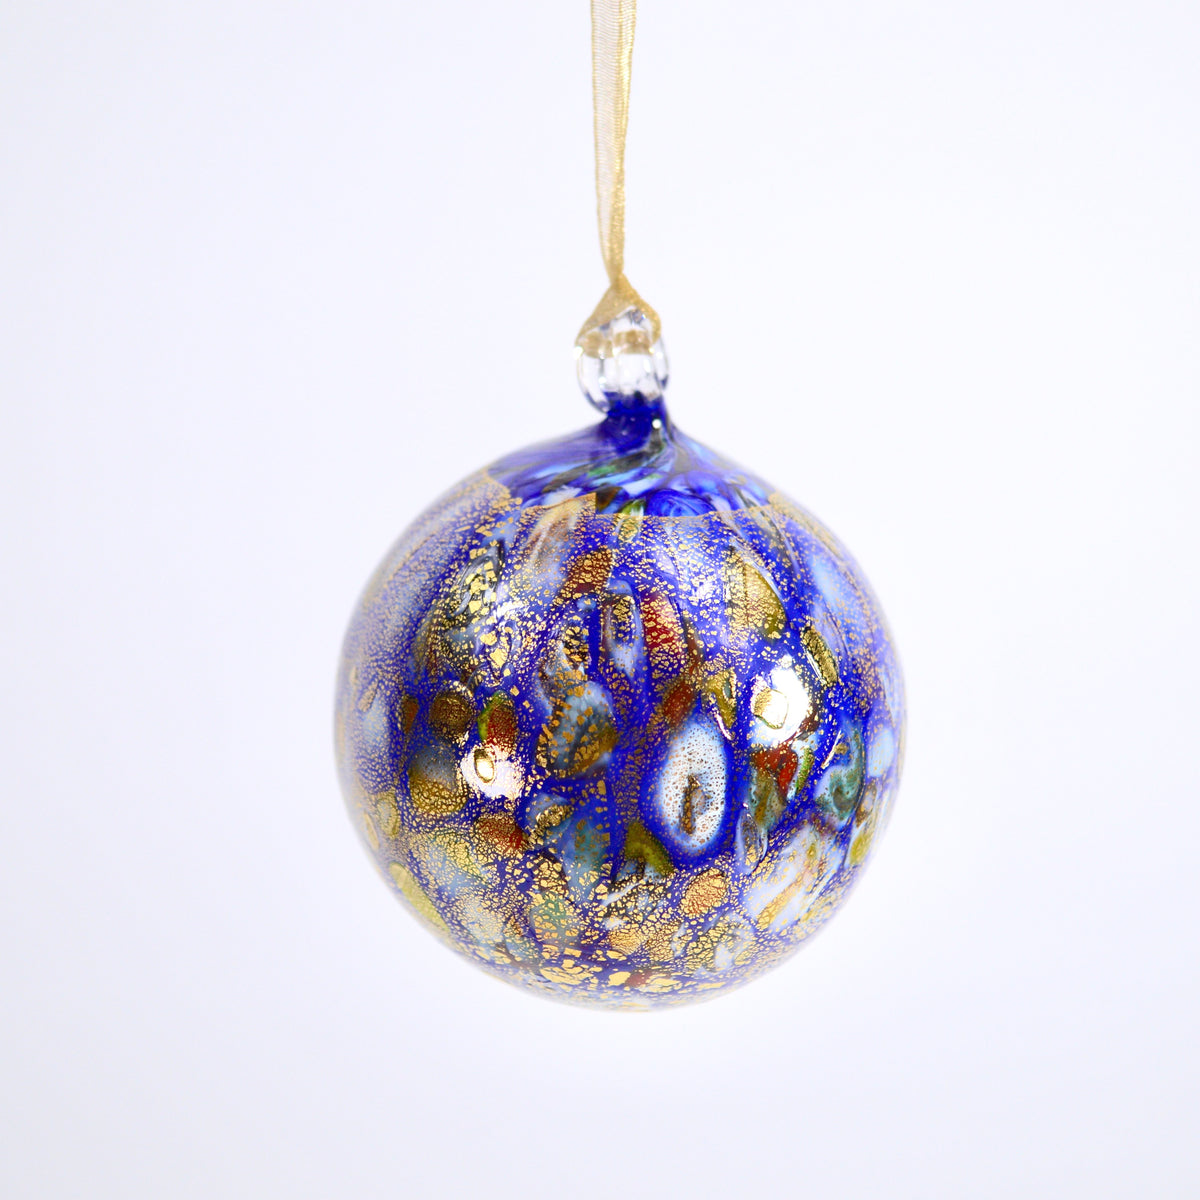 Murano Glass Ornament Macchia Accents, Made in Italy - My Italian Decor